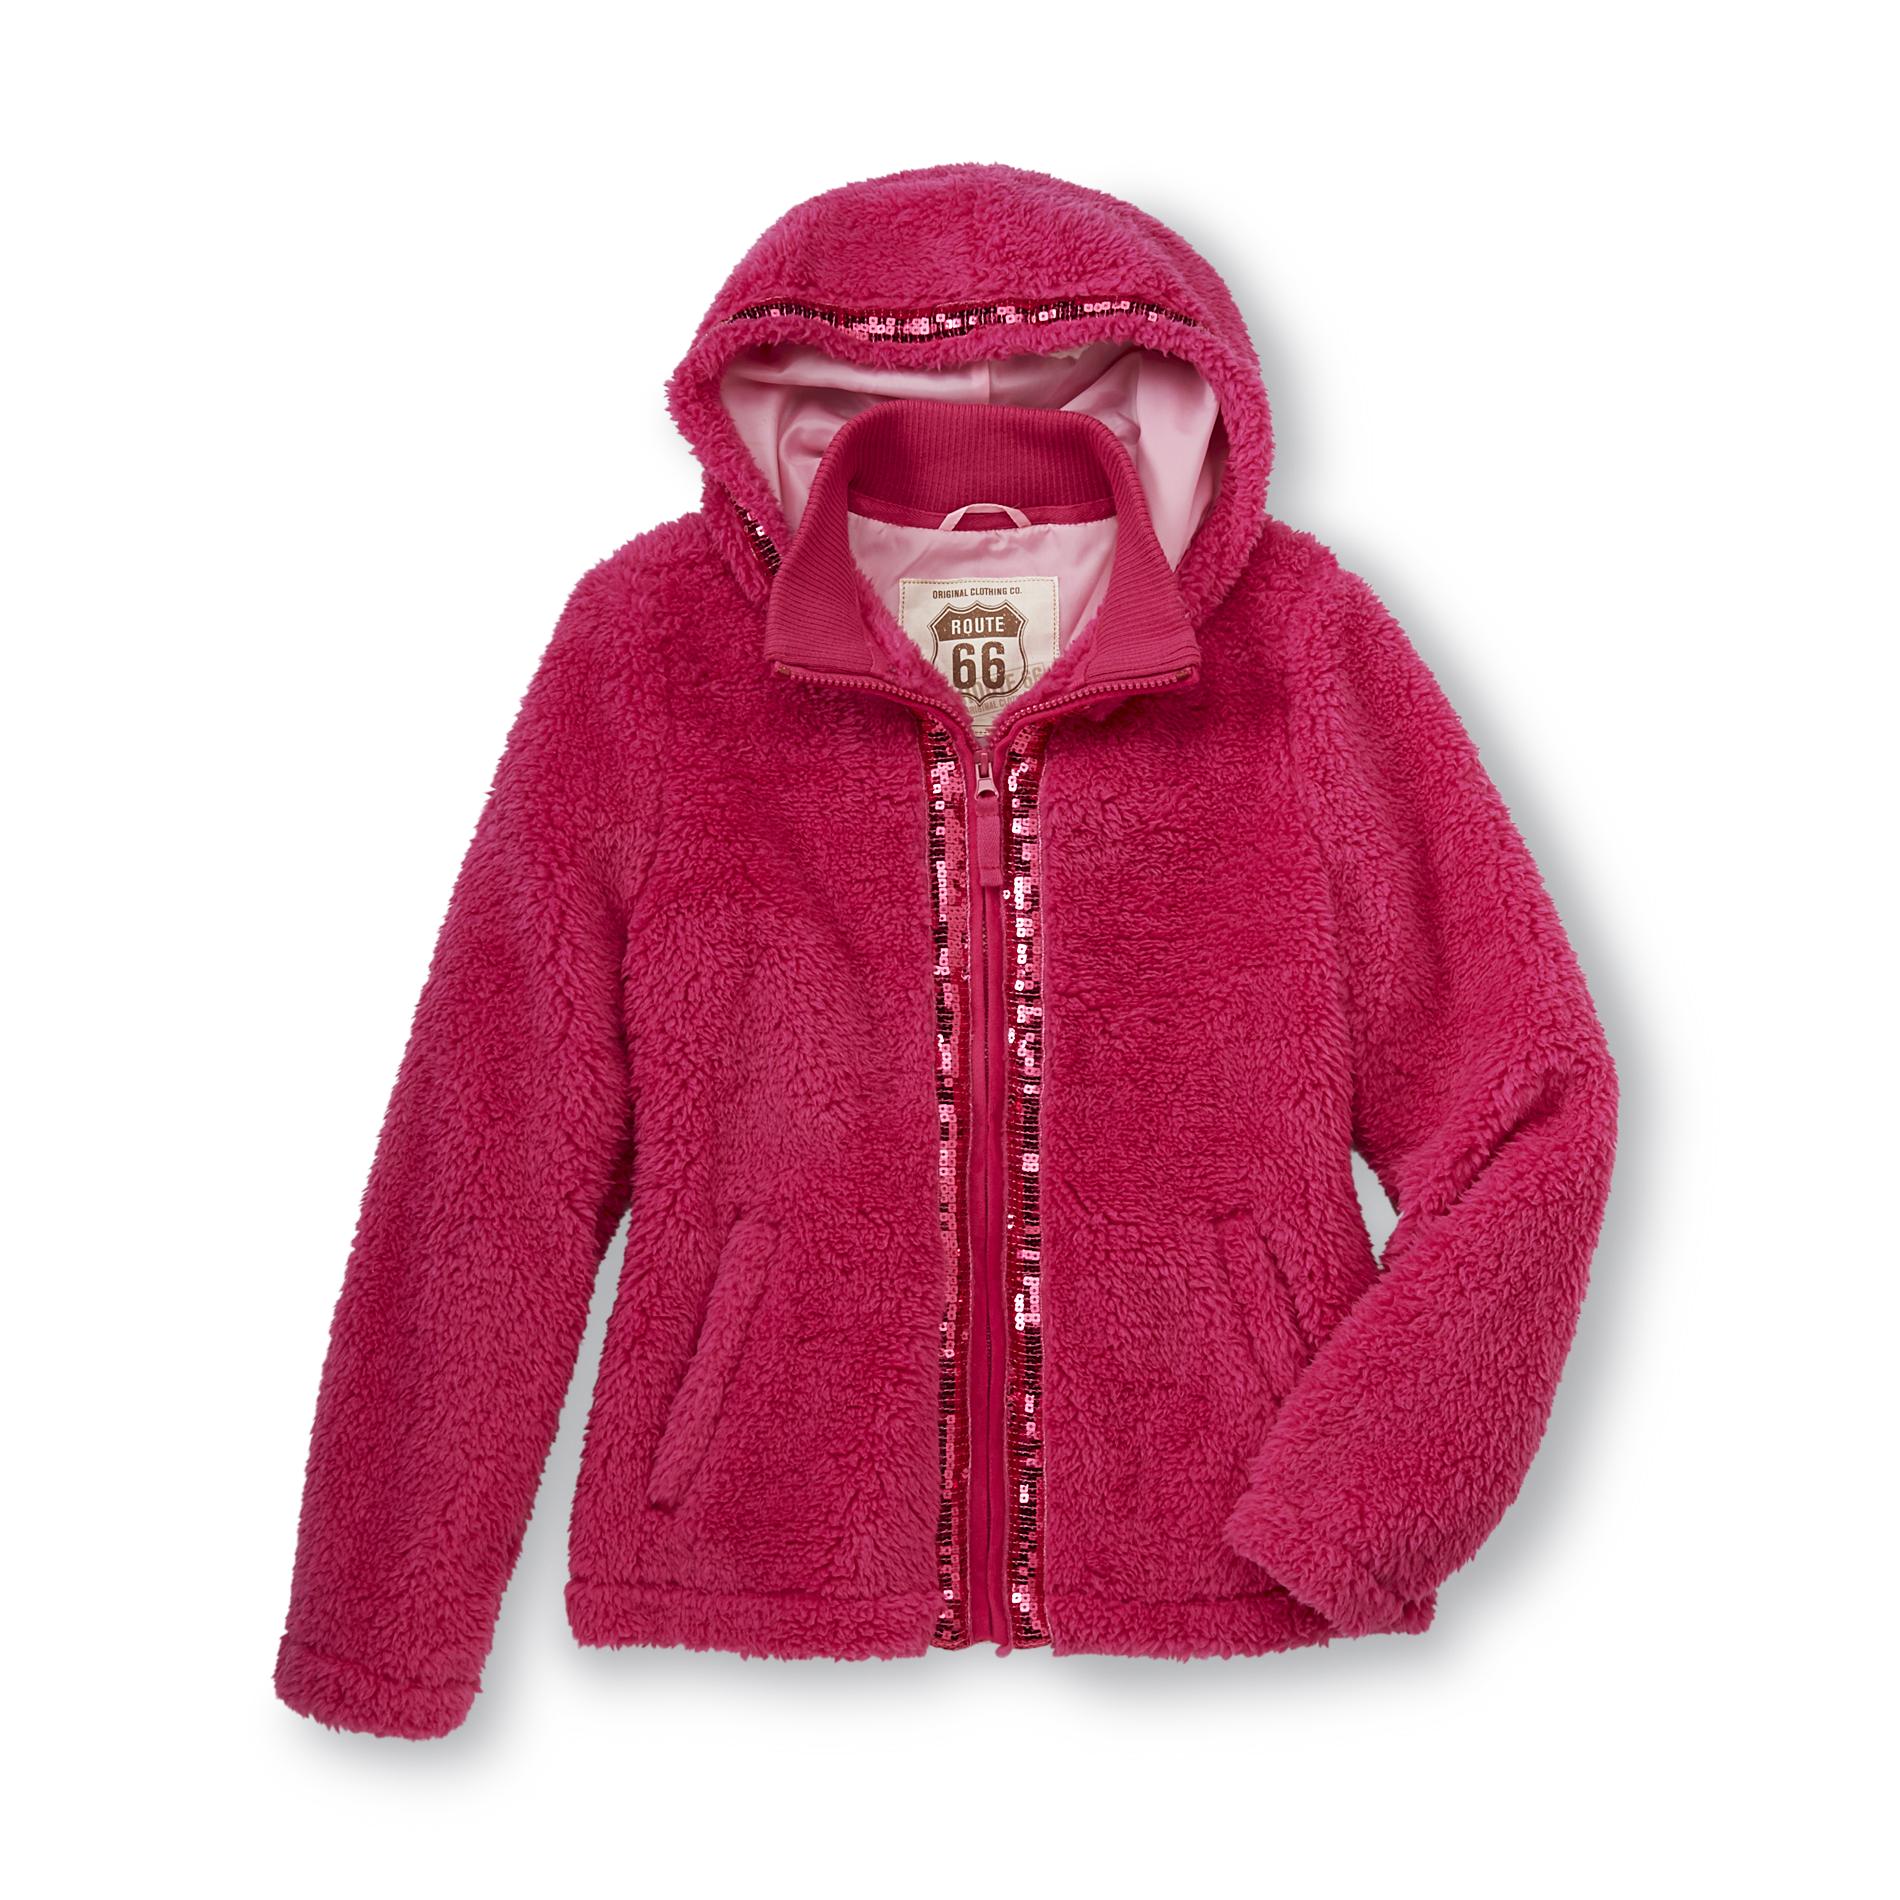 Route 66 Girl's Embellished Hooded Fleece Jacket